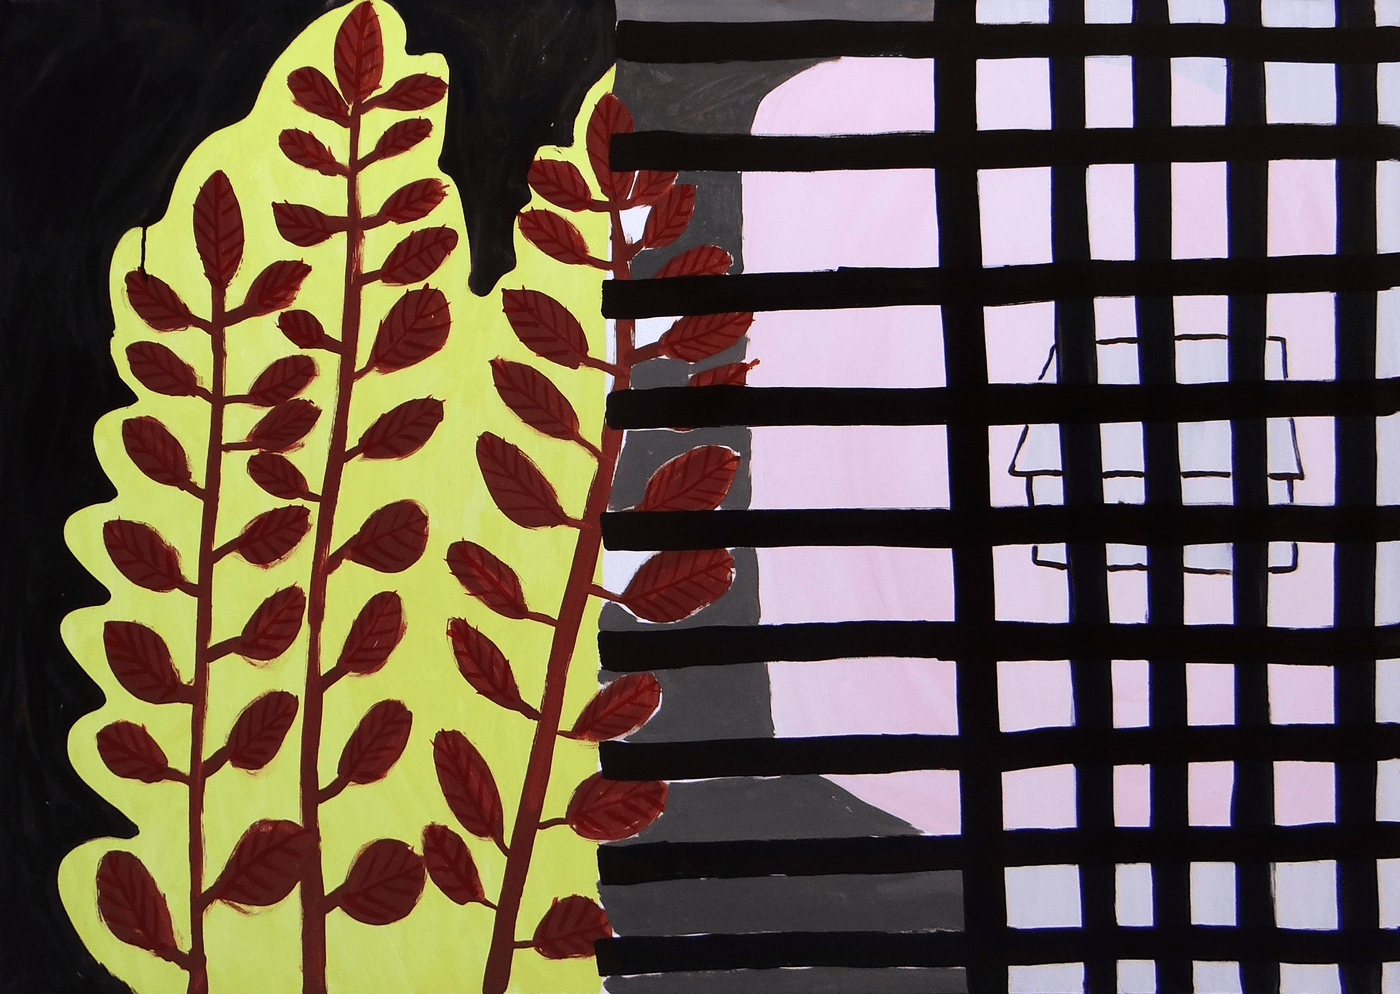 obraz. uproszczony wizerunek rośliny i krat w oknie